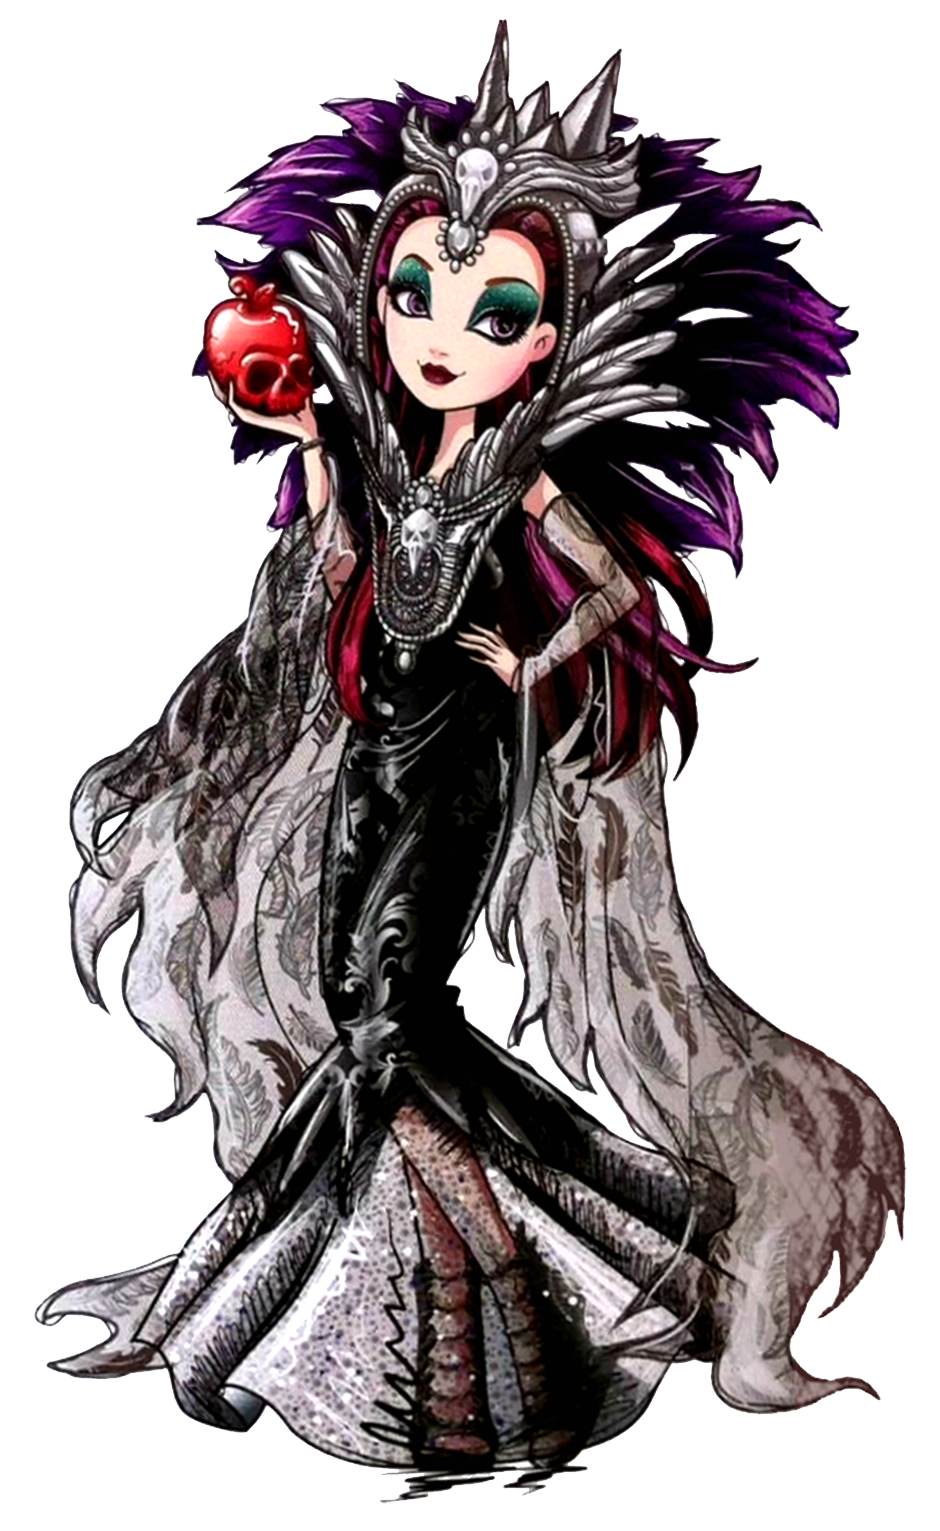 Ever High Dolls Raven Queen, Original Ever High Dolls